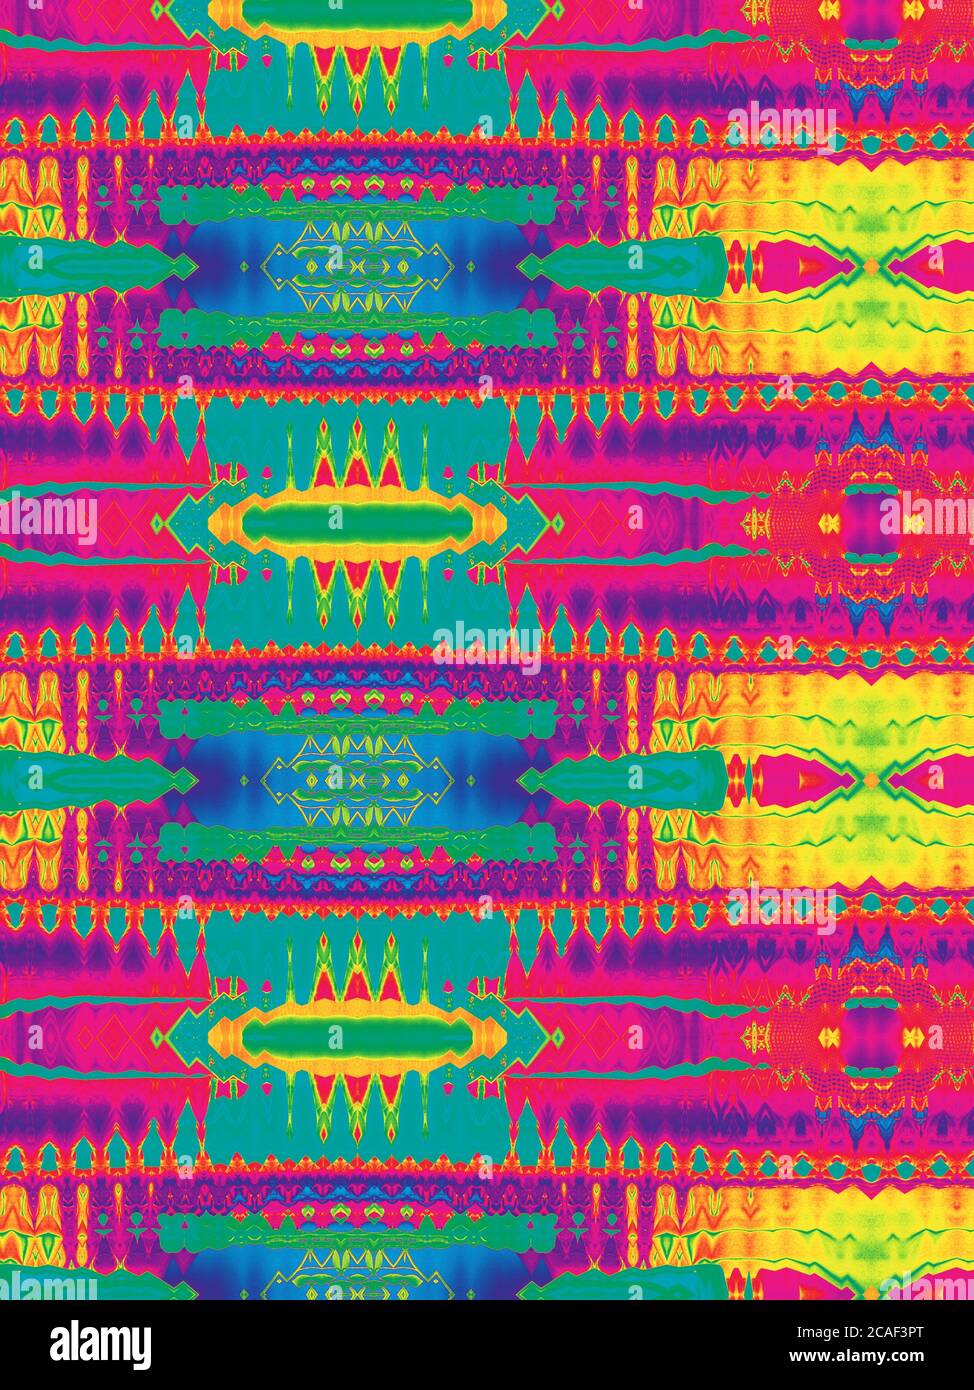 Abstrakter komplexer psychedelischer Vintage-Hintergrund in lebendigen Farben. Bunt verzerrte Neon Formen Party Poster. Stockfoto